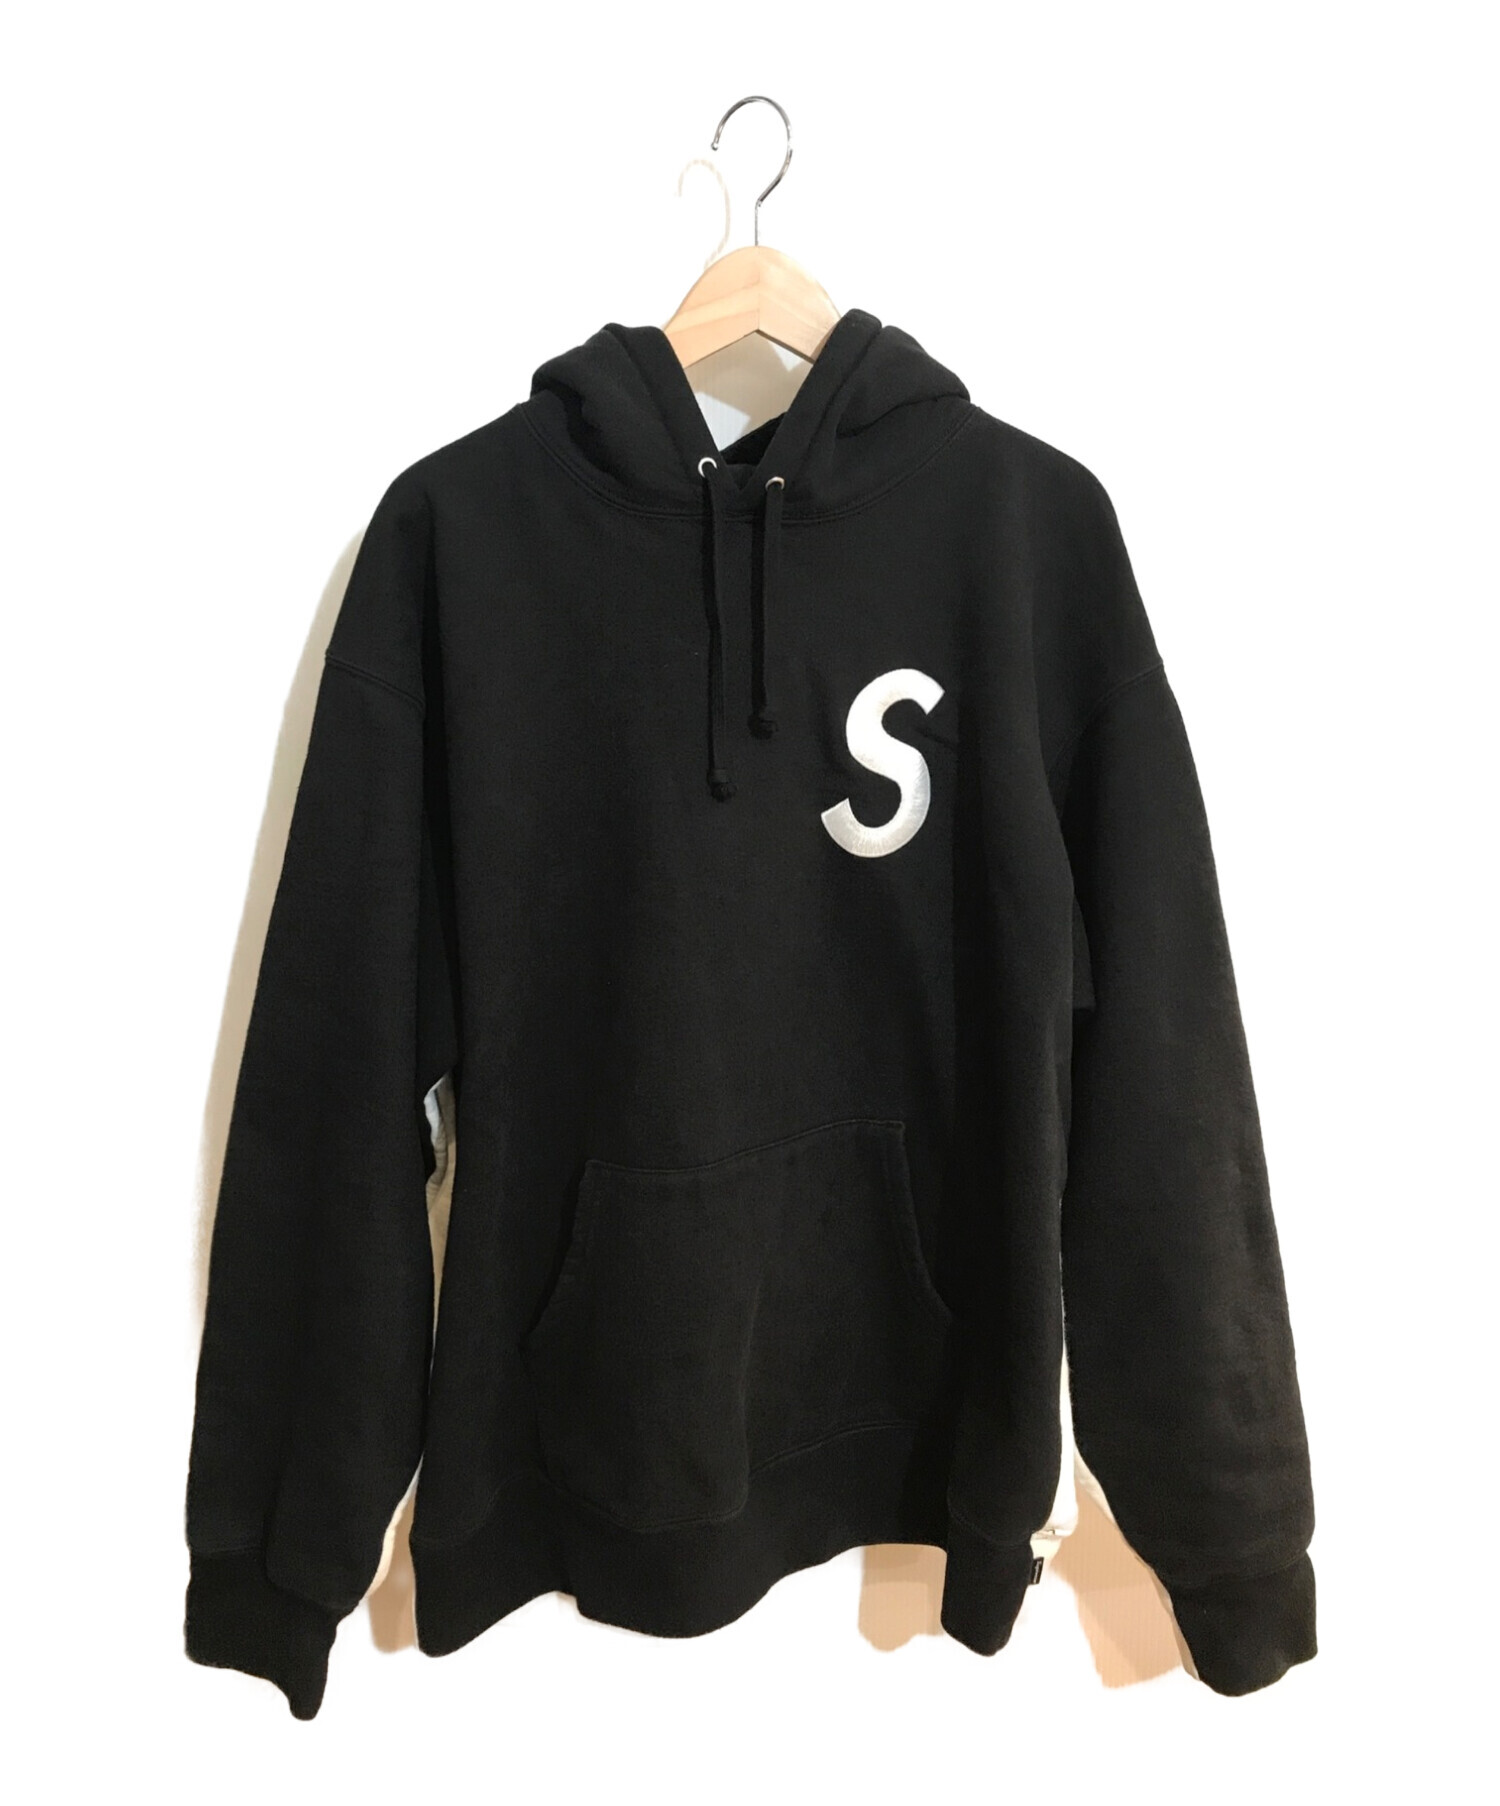 SUPREME (シュプリーム) S Logo Split Hooded Sweatshirt / Sロゴスウェットパーカー ブラック×ベージュ  サイズ:SIZE L